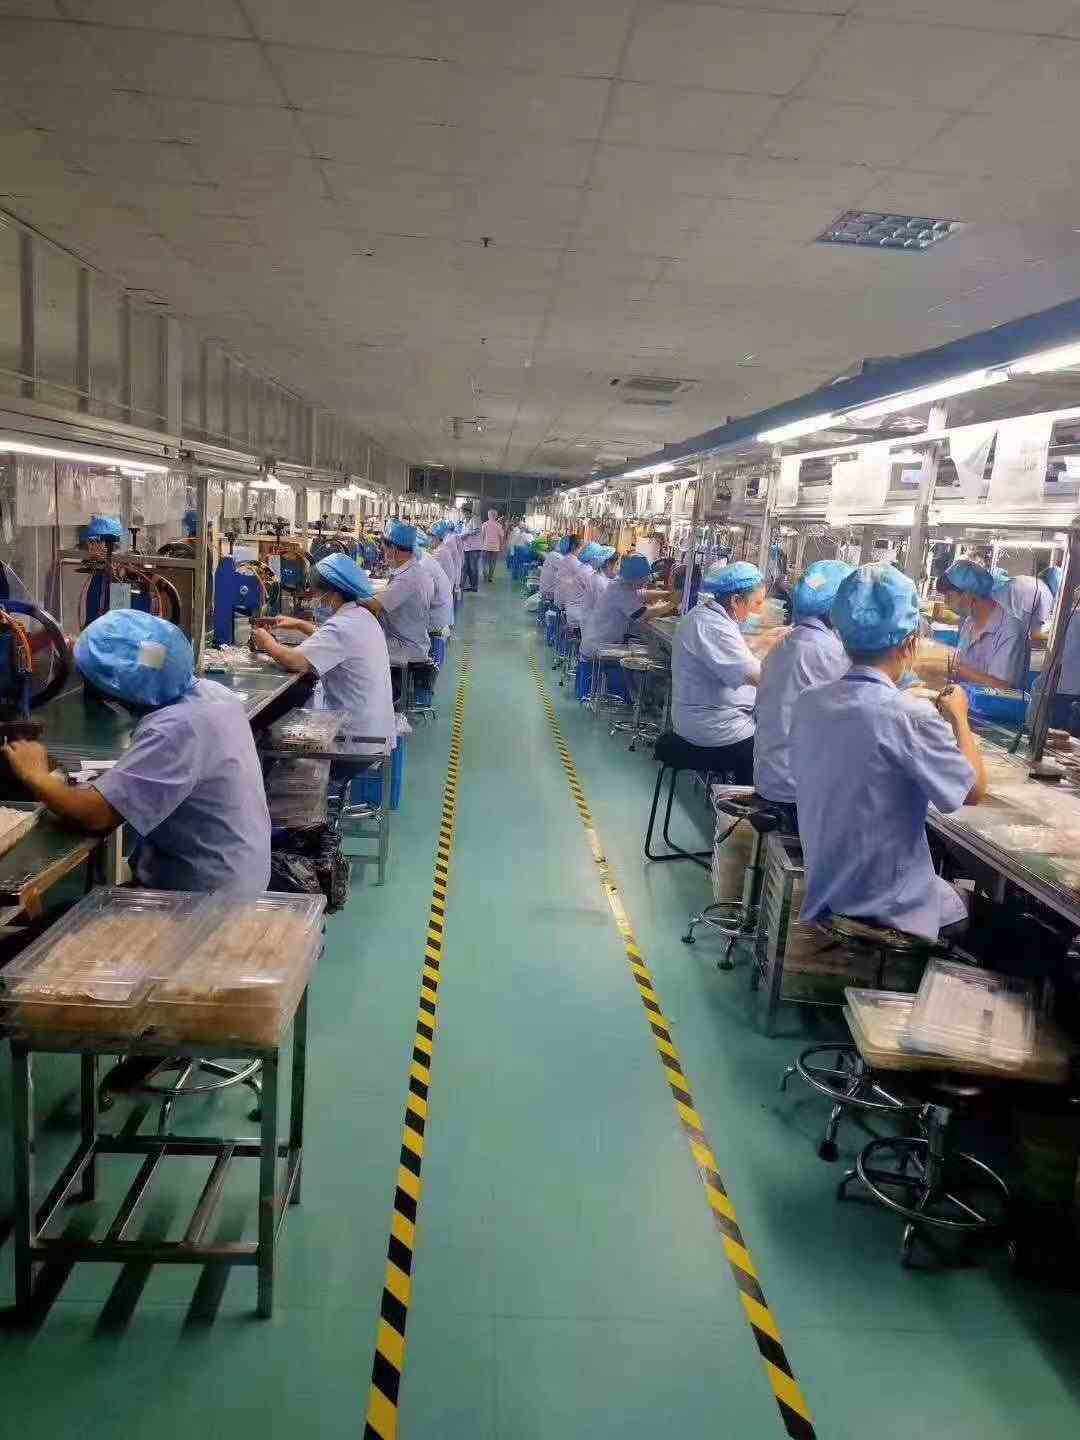 浙江杭州电子厂招普工,生产手机电脑配件工作轻松简单,一看就